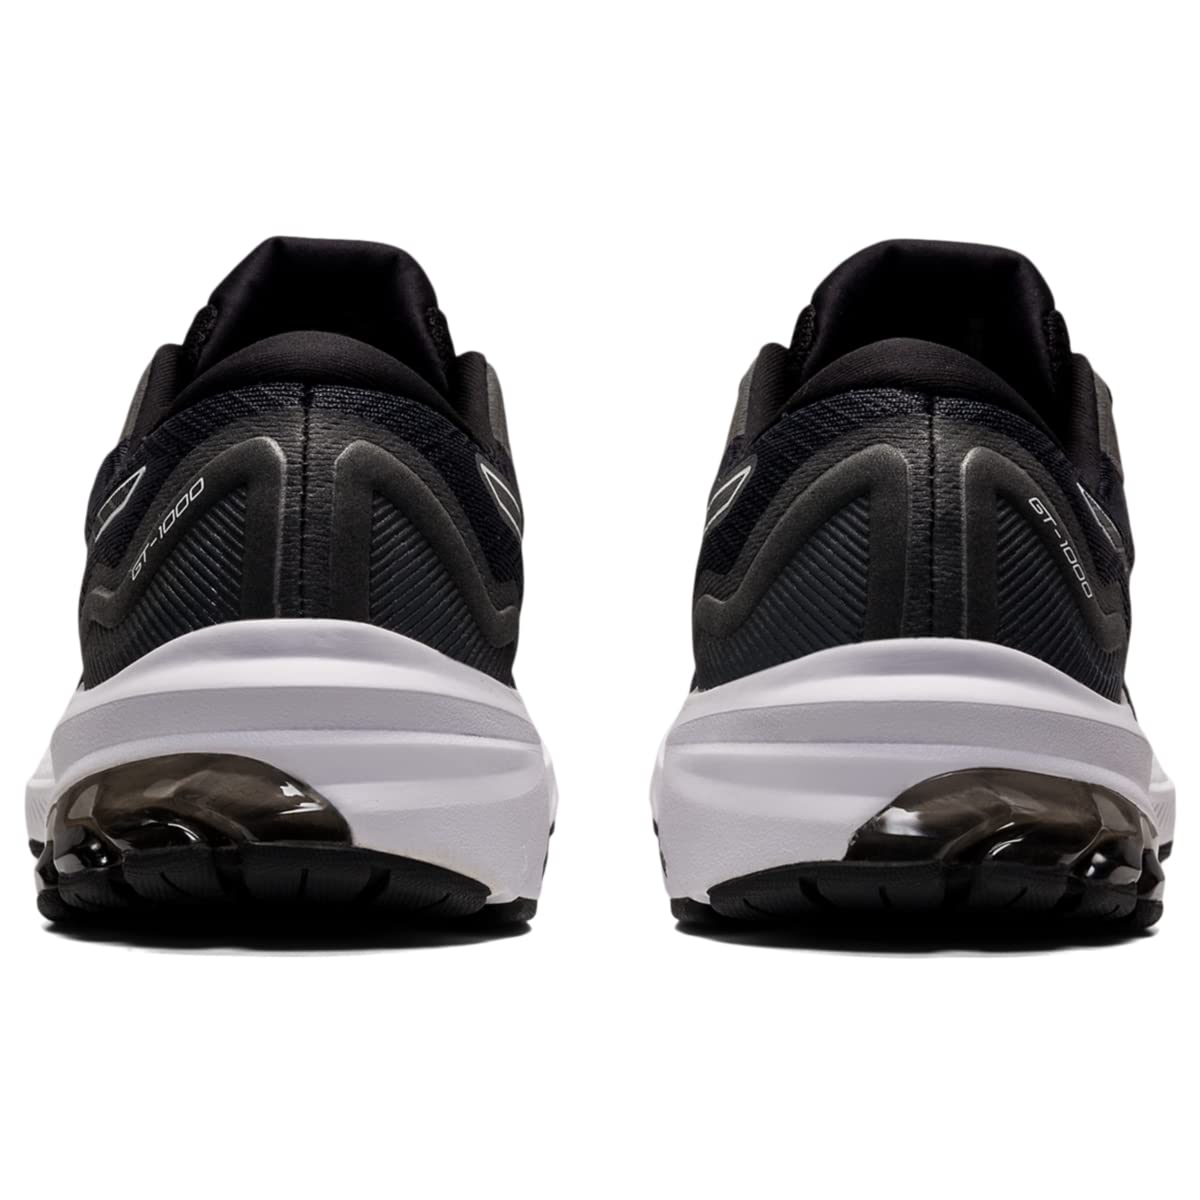 ASICS Women's GT-1000 11 Running Shoes, 8.5, Black/White